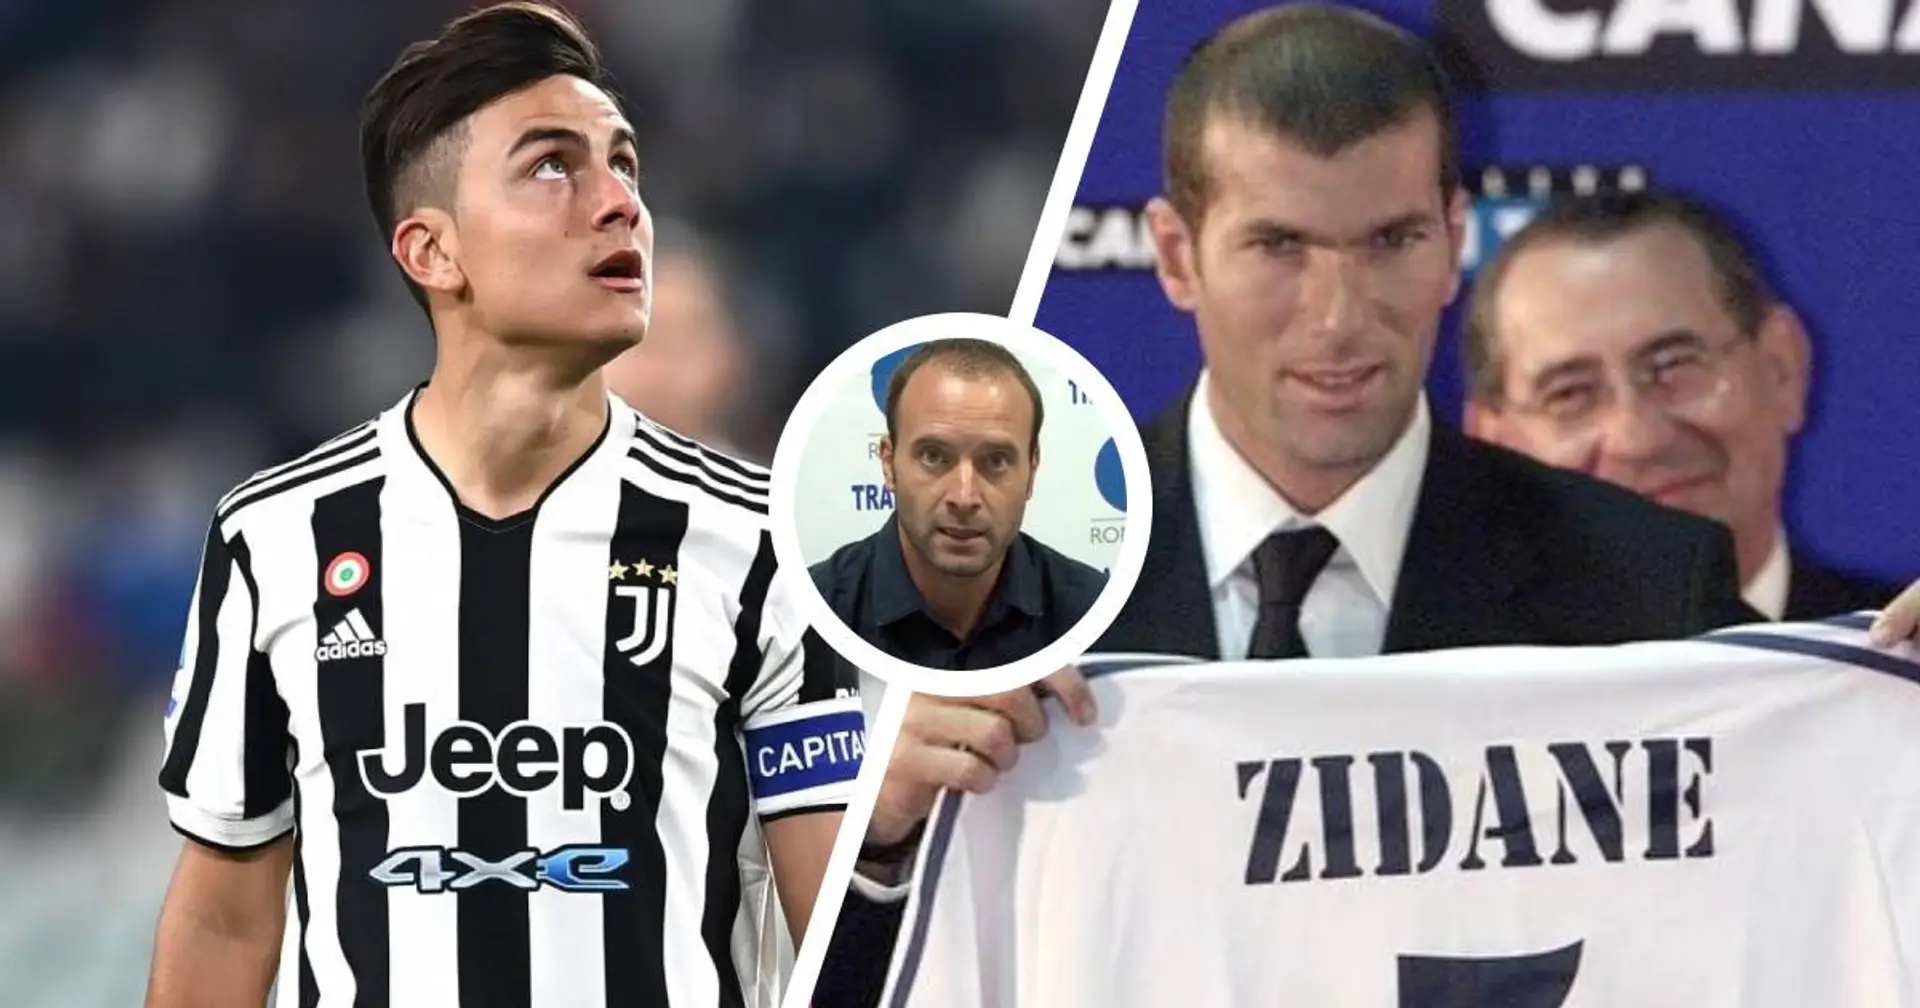 Dybala via? Per Birindelli non c'è nessun problema: "La Juventus è ripartita dopo Zidane"